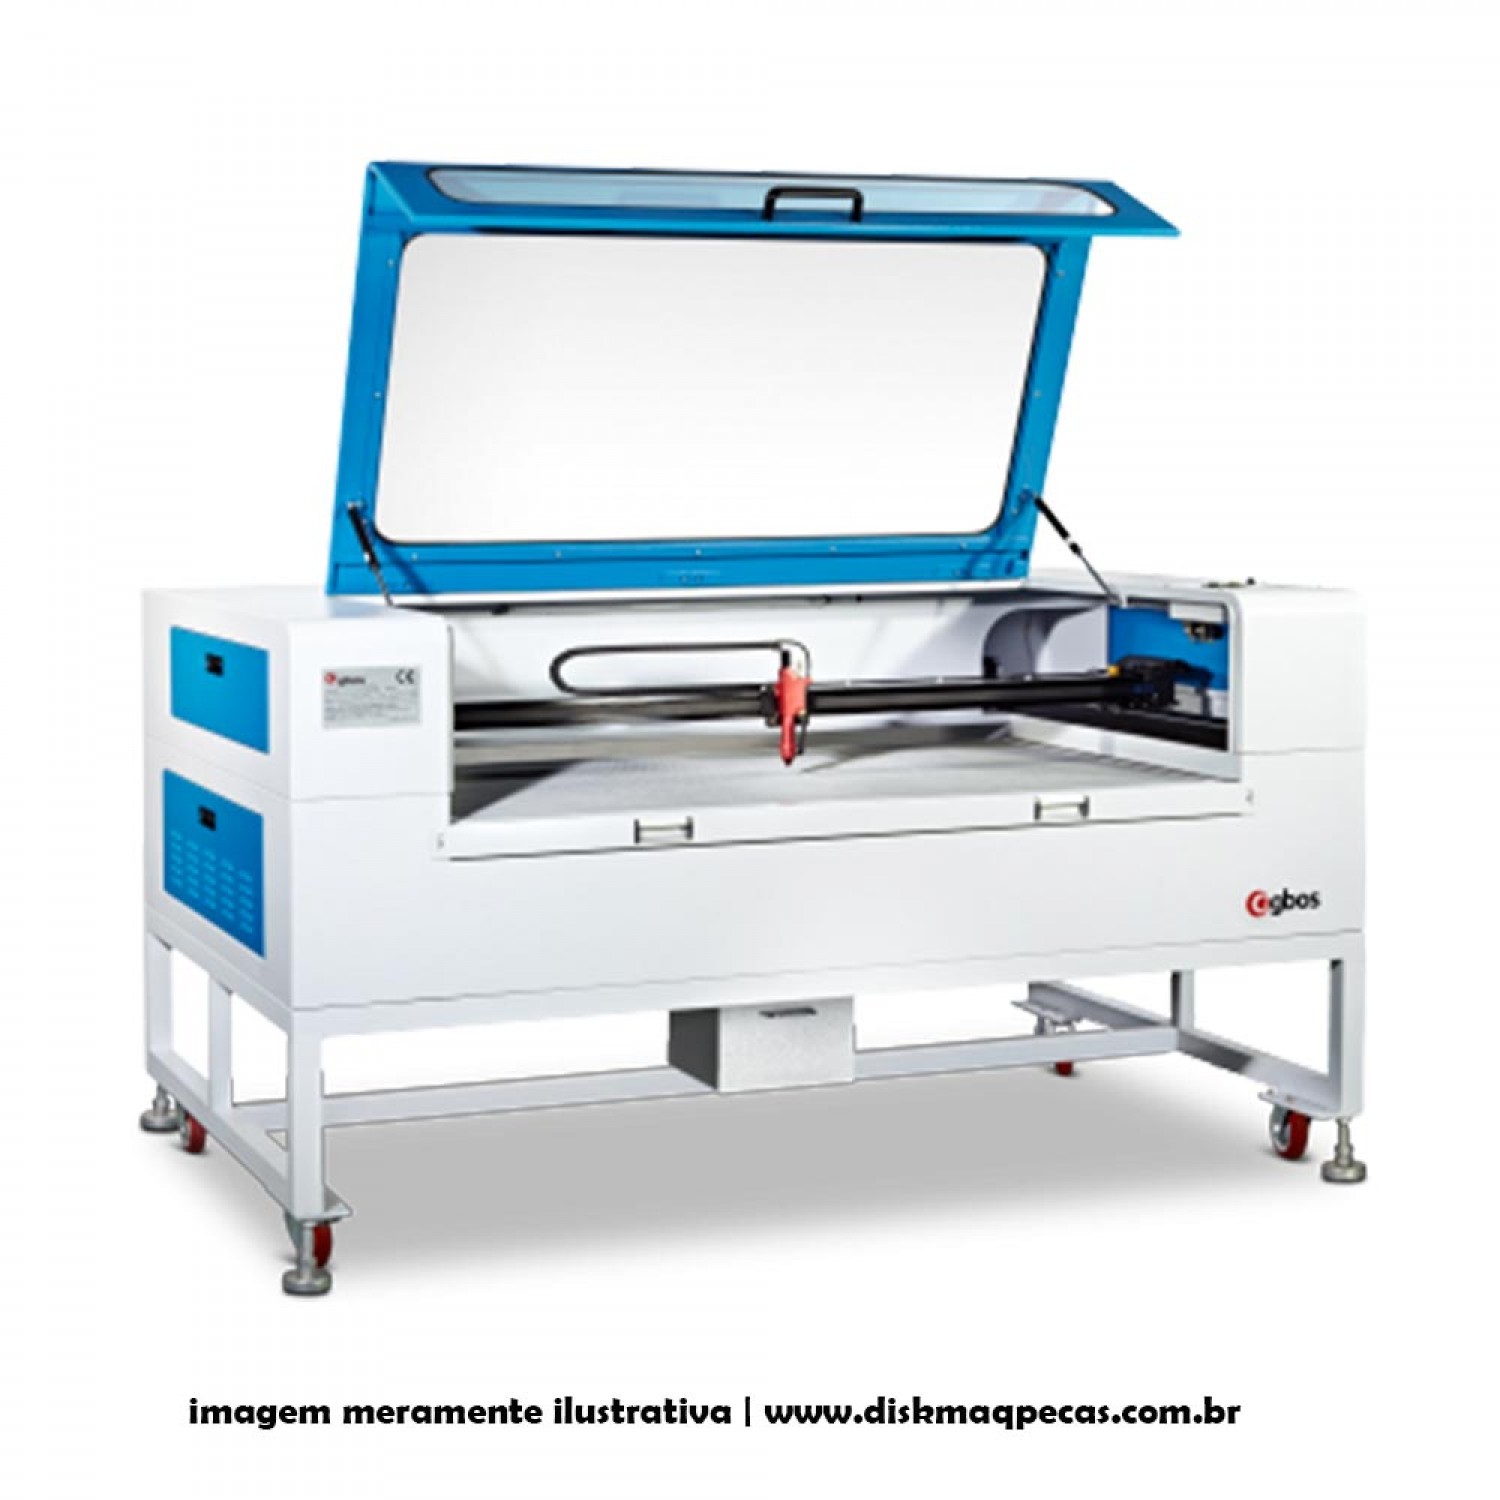 maquina-de-corte-e-gravacao-a-laser-para-materiais-nao-metalicos-1300x900mm-gh1390t-90w